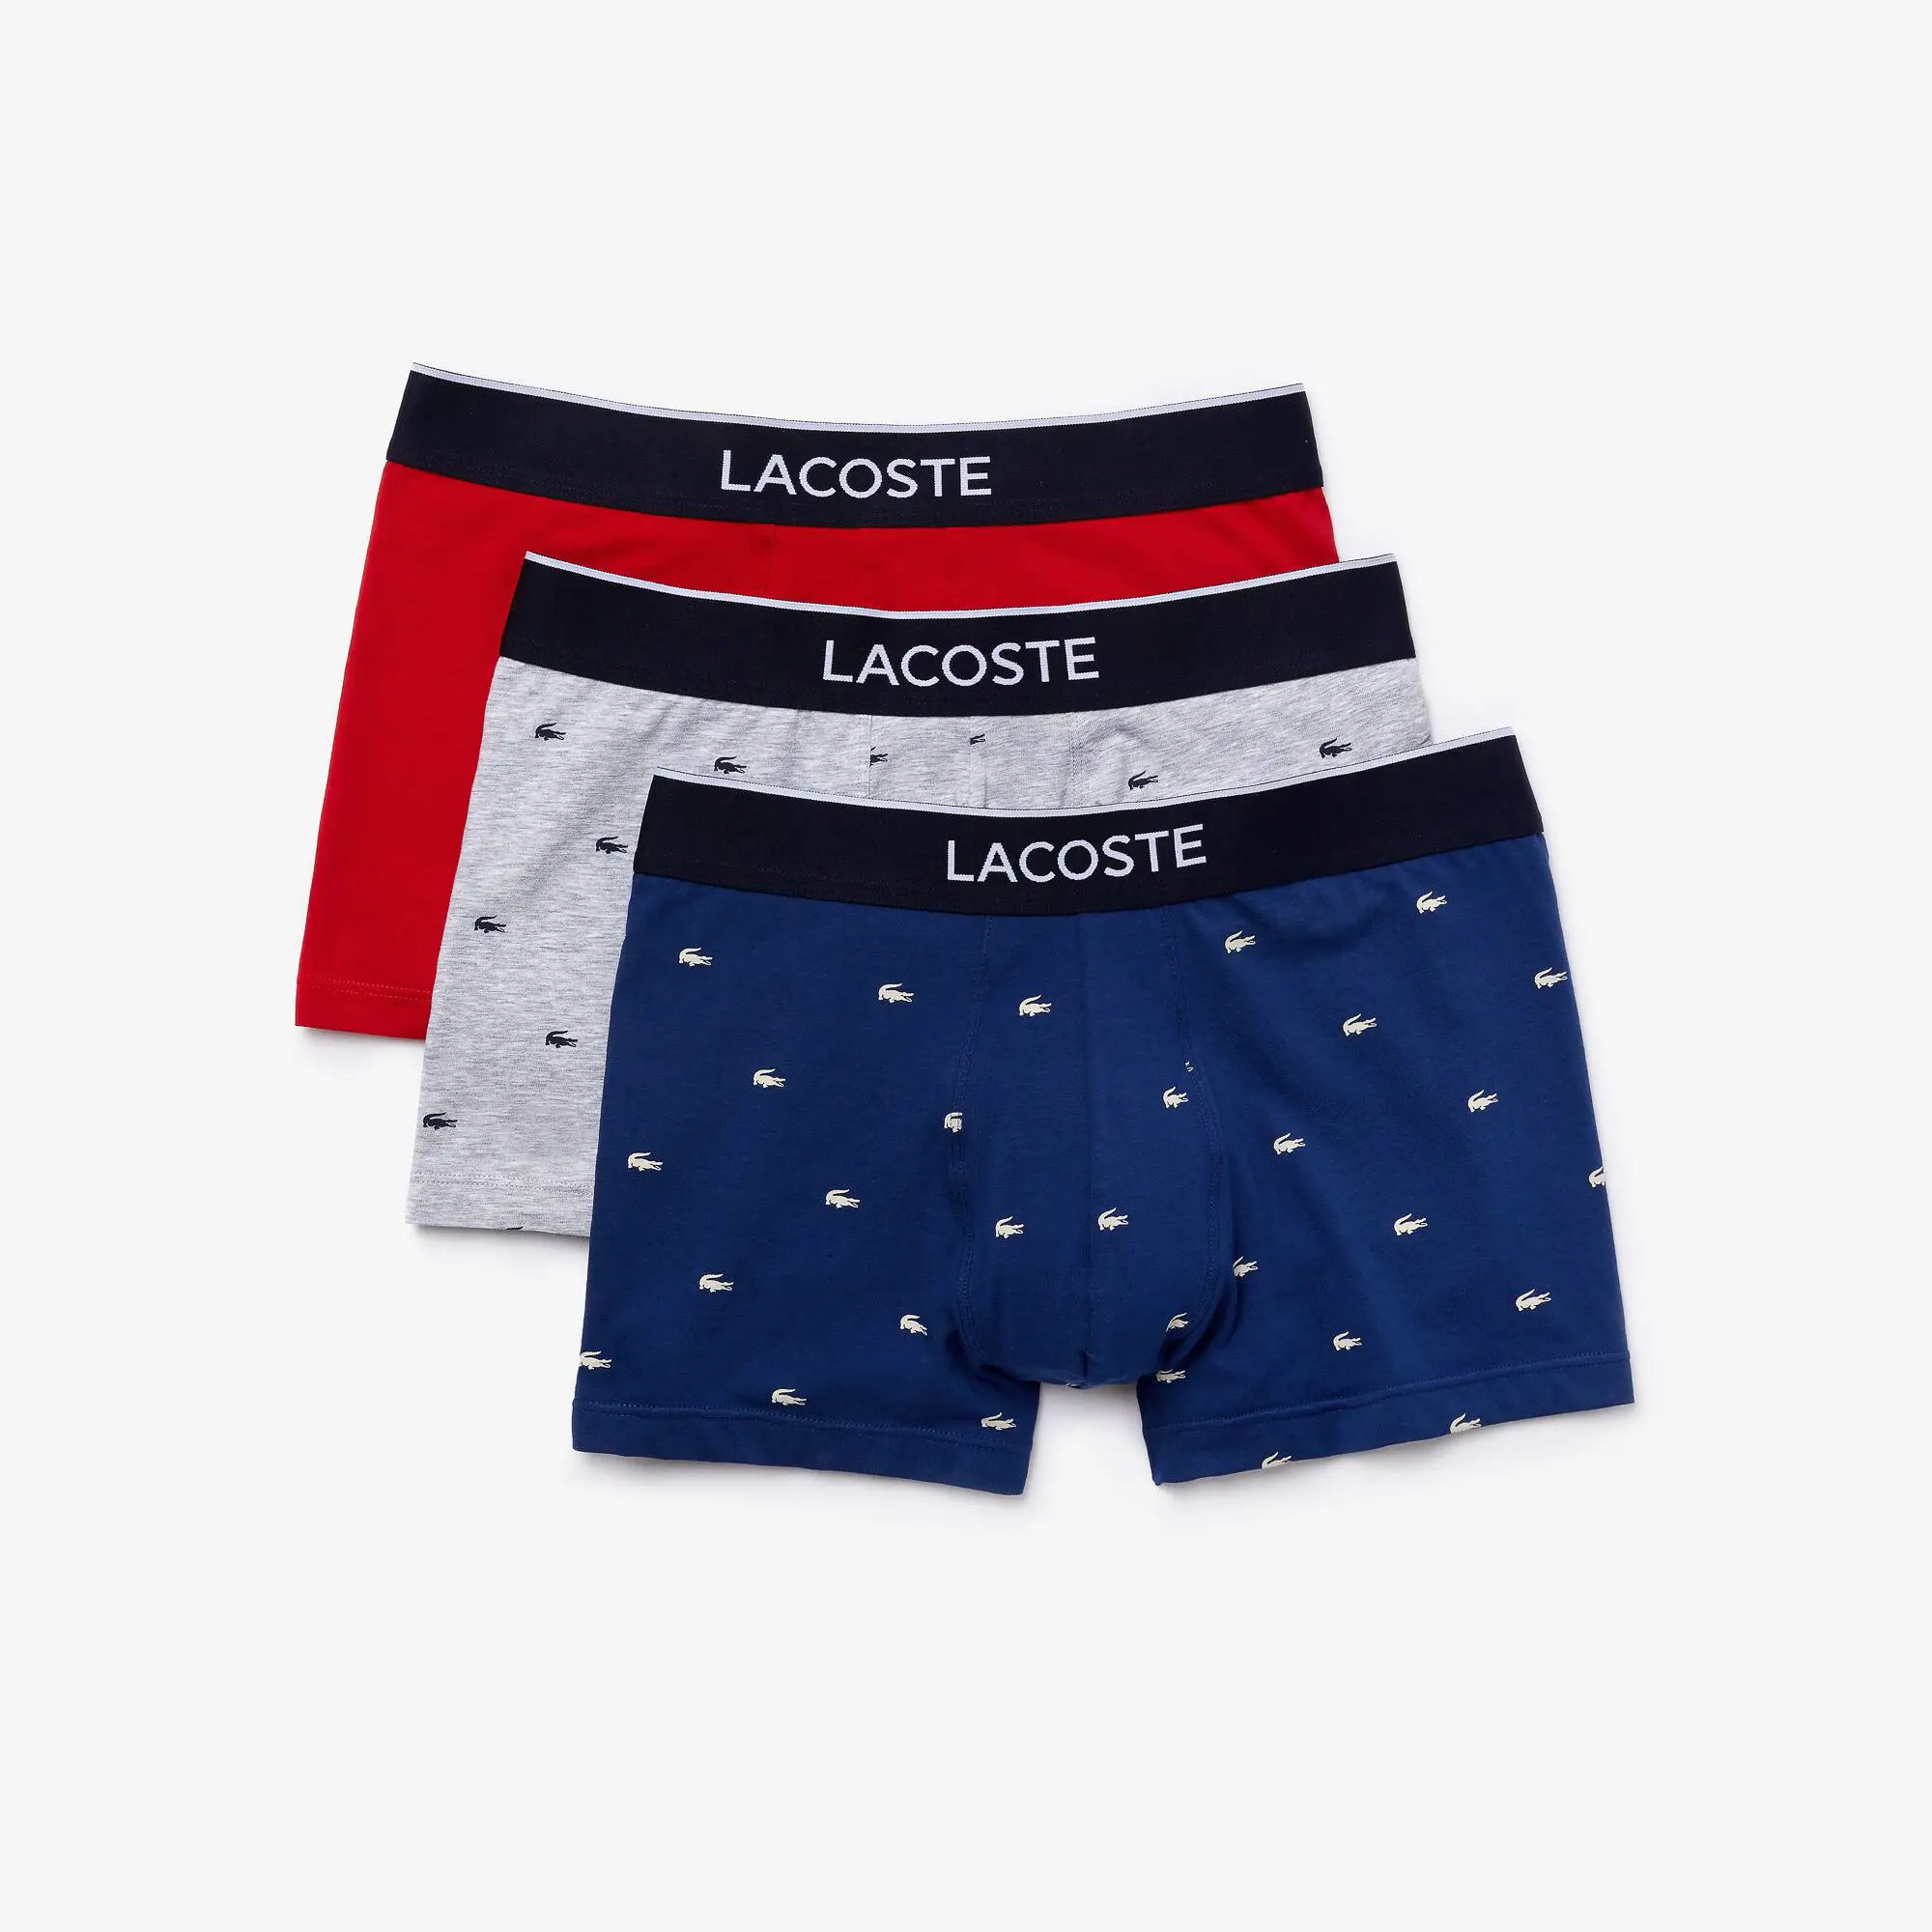 Lacoste Pack de 3 calzoncillos bóxer de hombre de estilo casual con detalles de la marca. 2